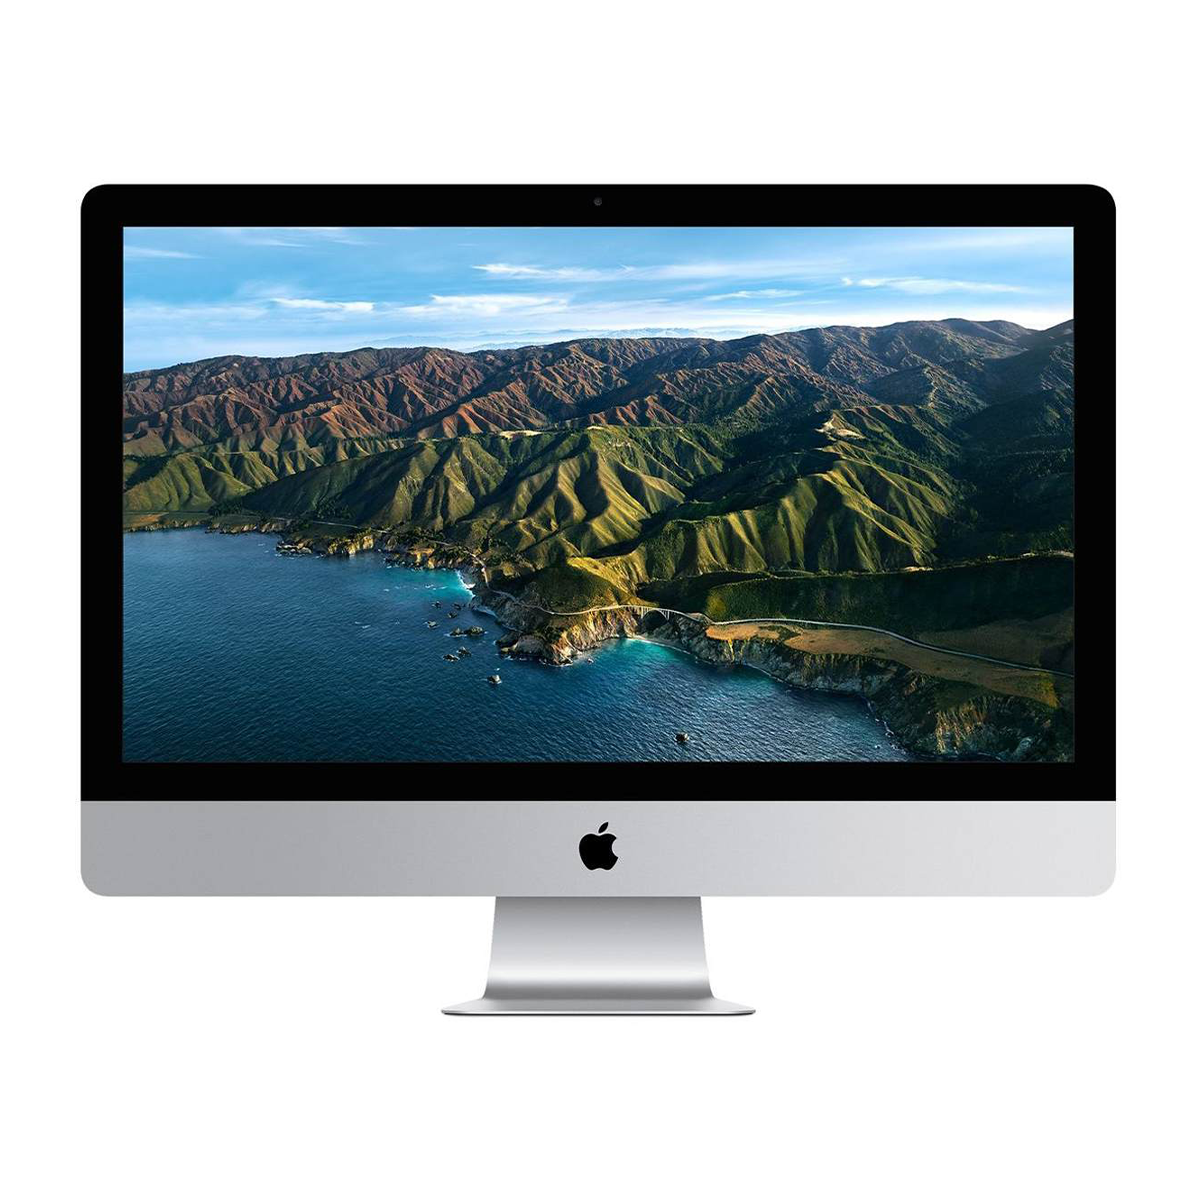 کامپیوتر All in One اپل 27 اینچی مدل iMac 2020 MXWV2 i7 8GB 512GB Radeon Pro 5500 XT copy-small-image.png